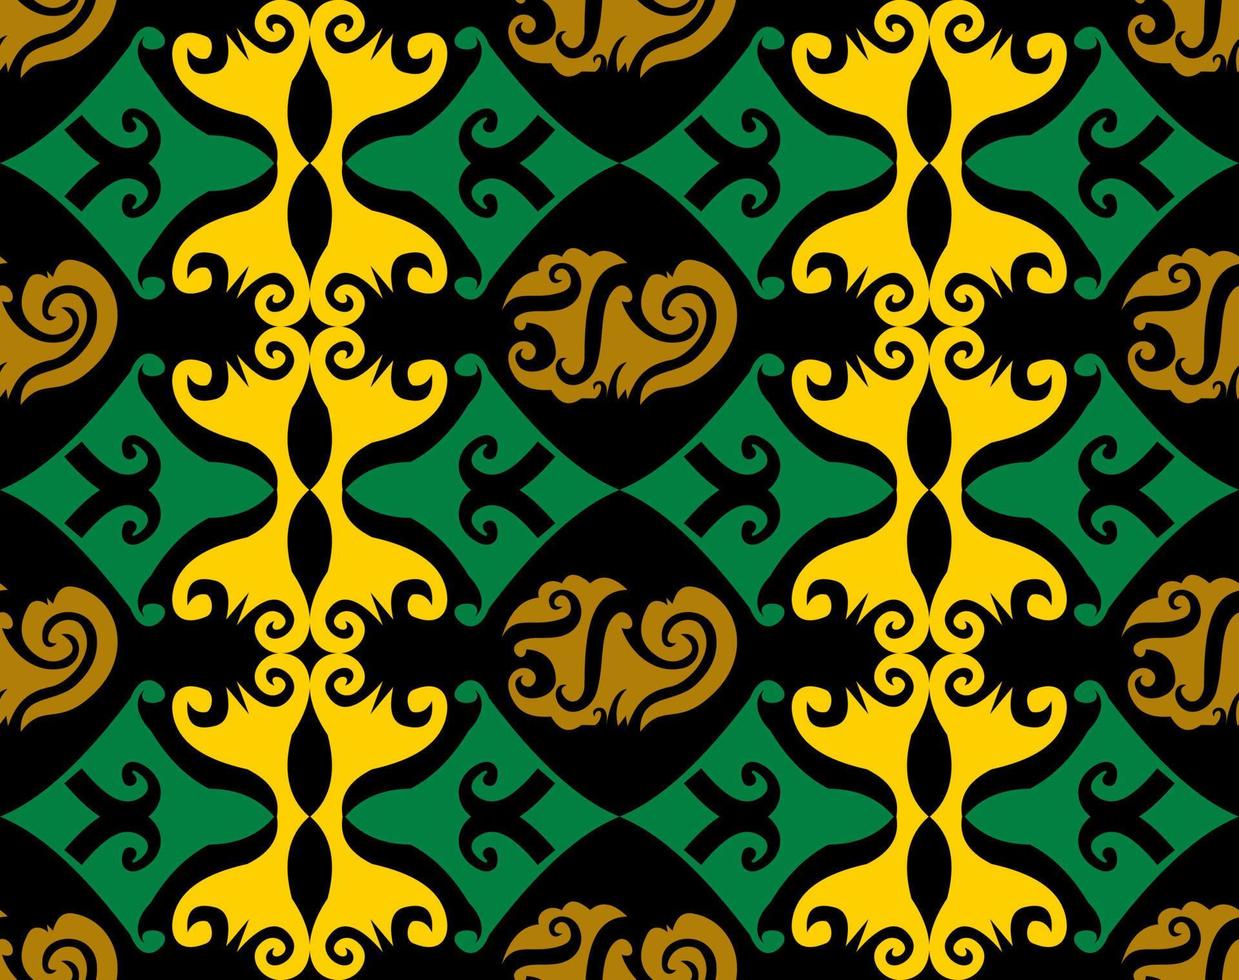 motif harmonieux de motif ethnique dayak.motif de tissu indonésien traditionnel.motif bornéo. inspiration de conception de vecteur. textile créatif pour la mode ou le tissu vecteur